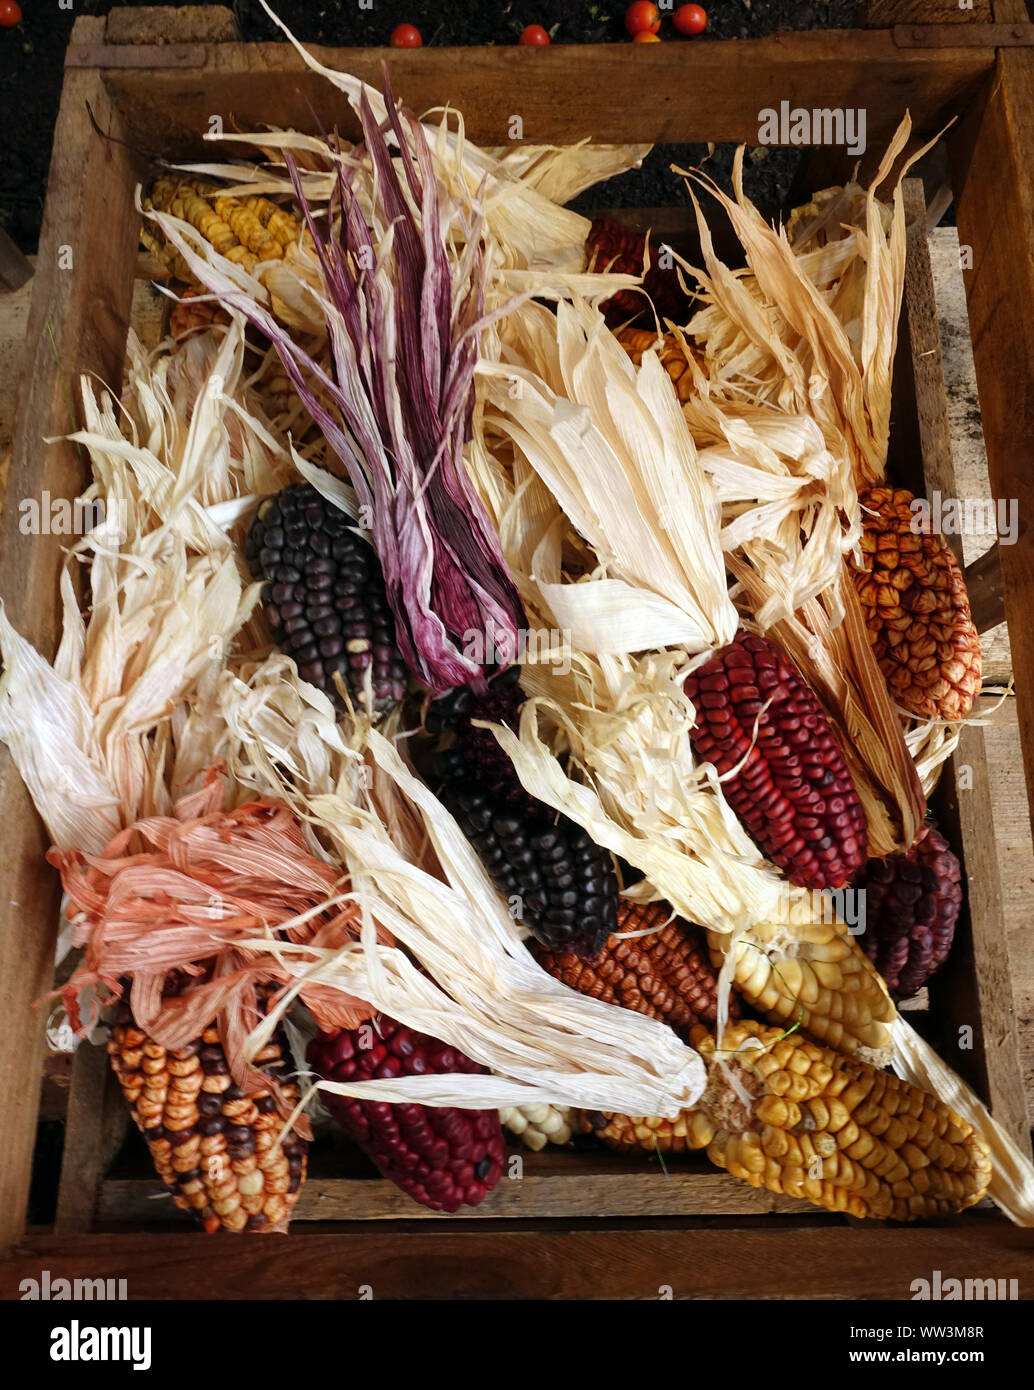 Maiskolben in verschiedenen Farben als Dekoration Foto Stock